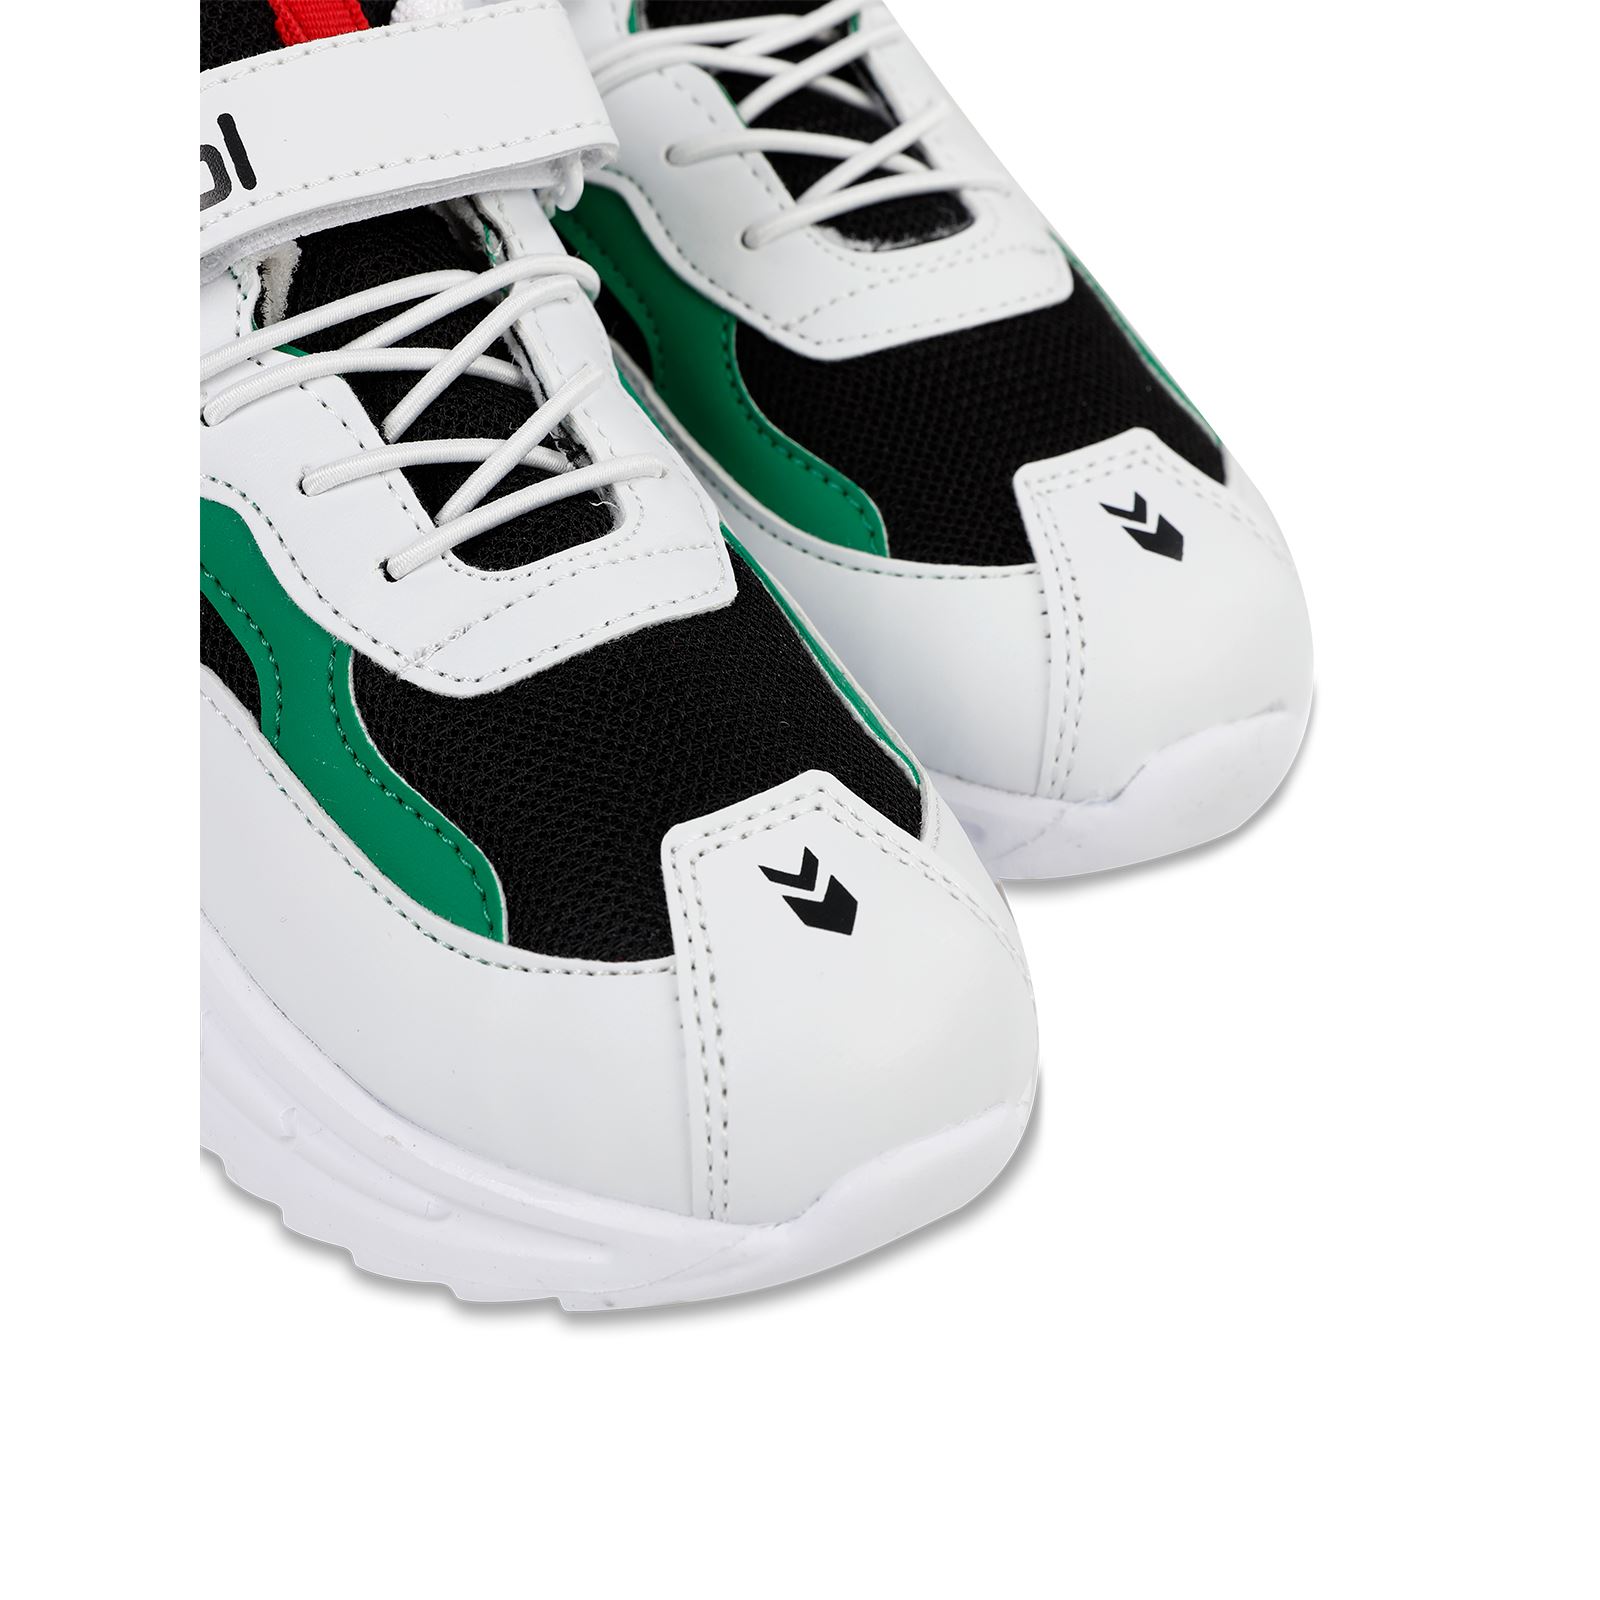 Civil Sport Kız Çocuk Spor Ayakkabı 31-35 Numara Beyaz-Yeşil